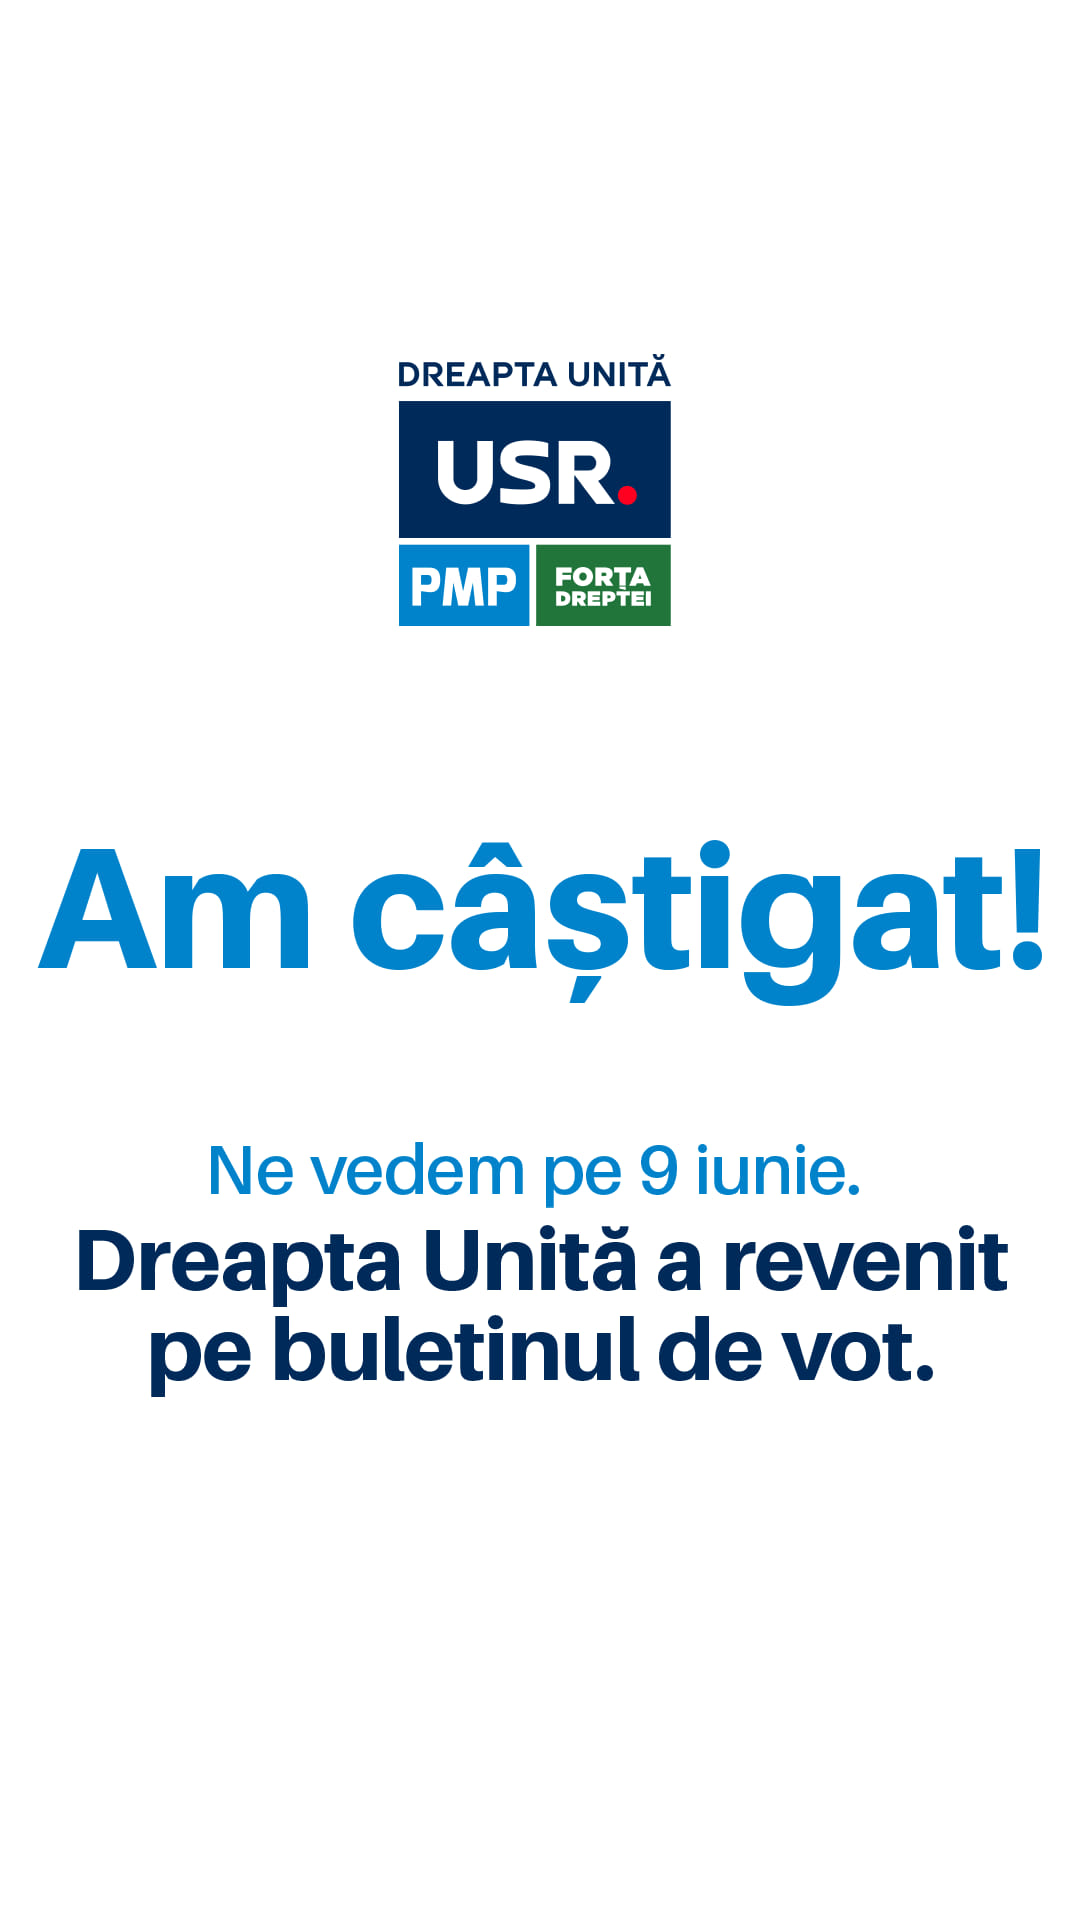 Am câștigat! Dreapta Unită va fi pe buletinele de vot pe 9 iunie!